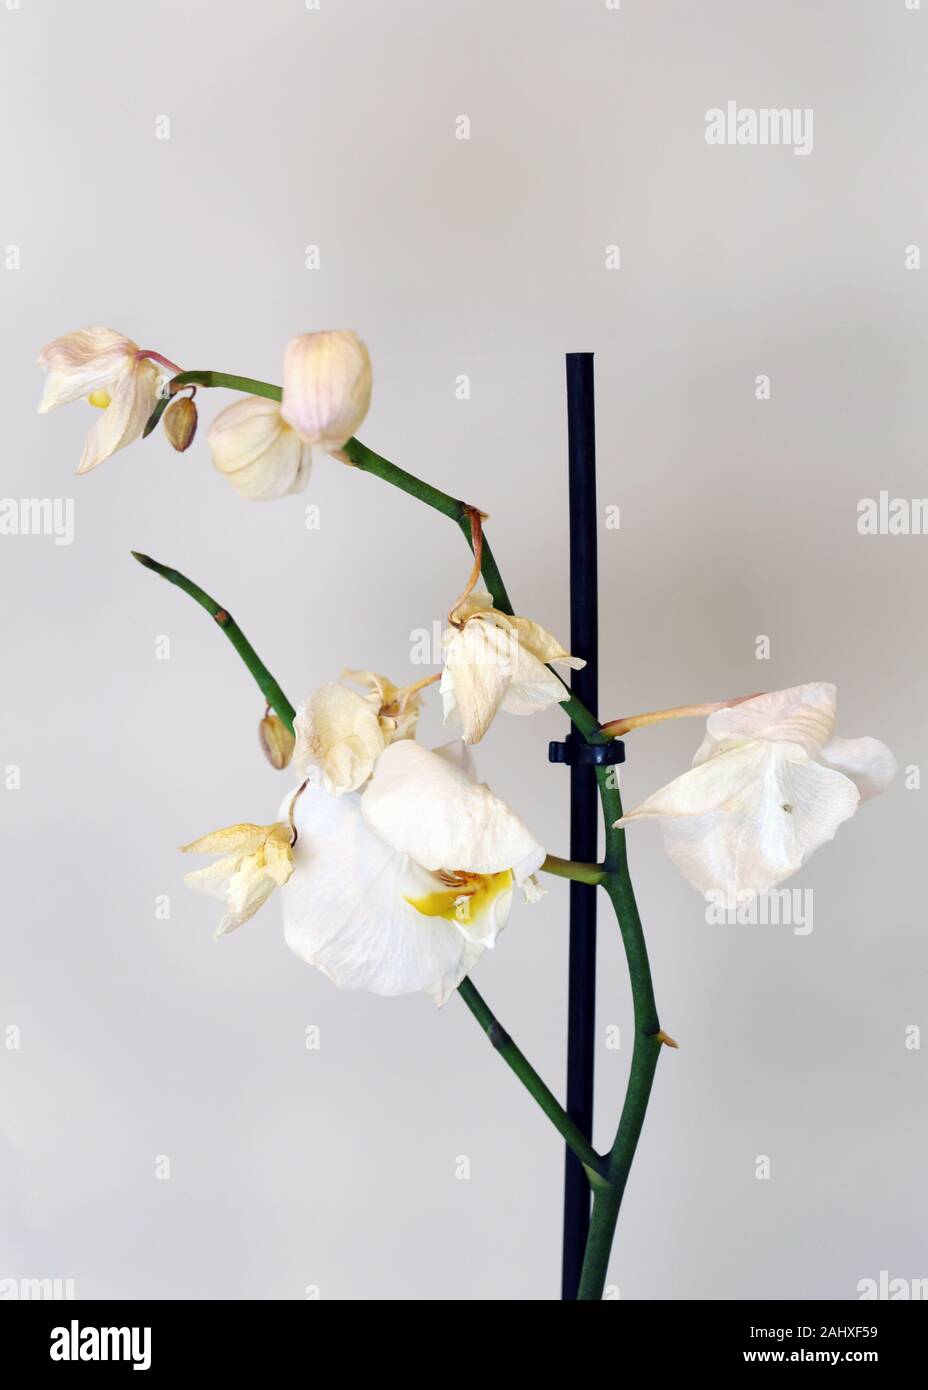 Secco, morti bianche orchidee phaleonopsis con sfondo bianco. Questi fiori utilizzati per essere una bella parte di Scandinavian decorazione della casa ma sono morti. Foto Stock